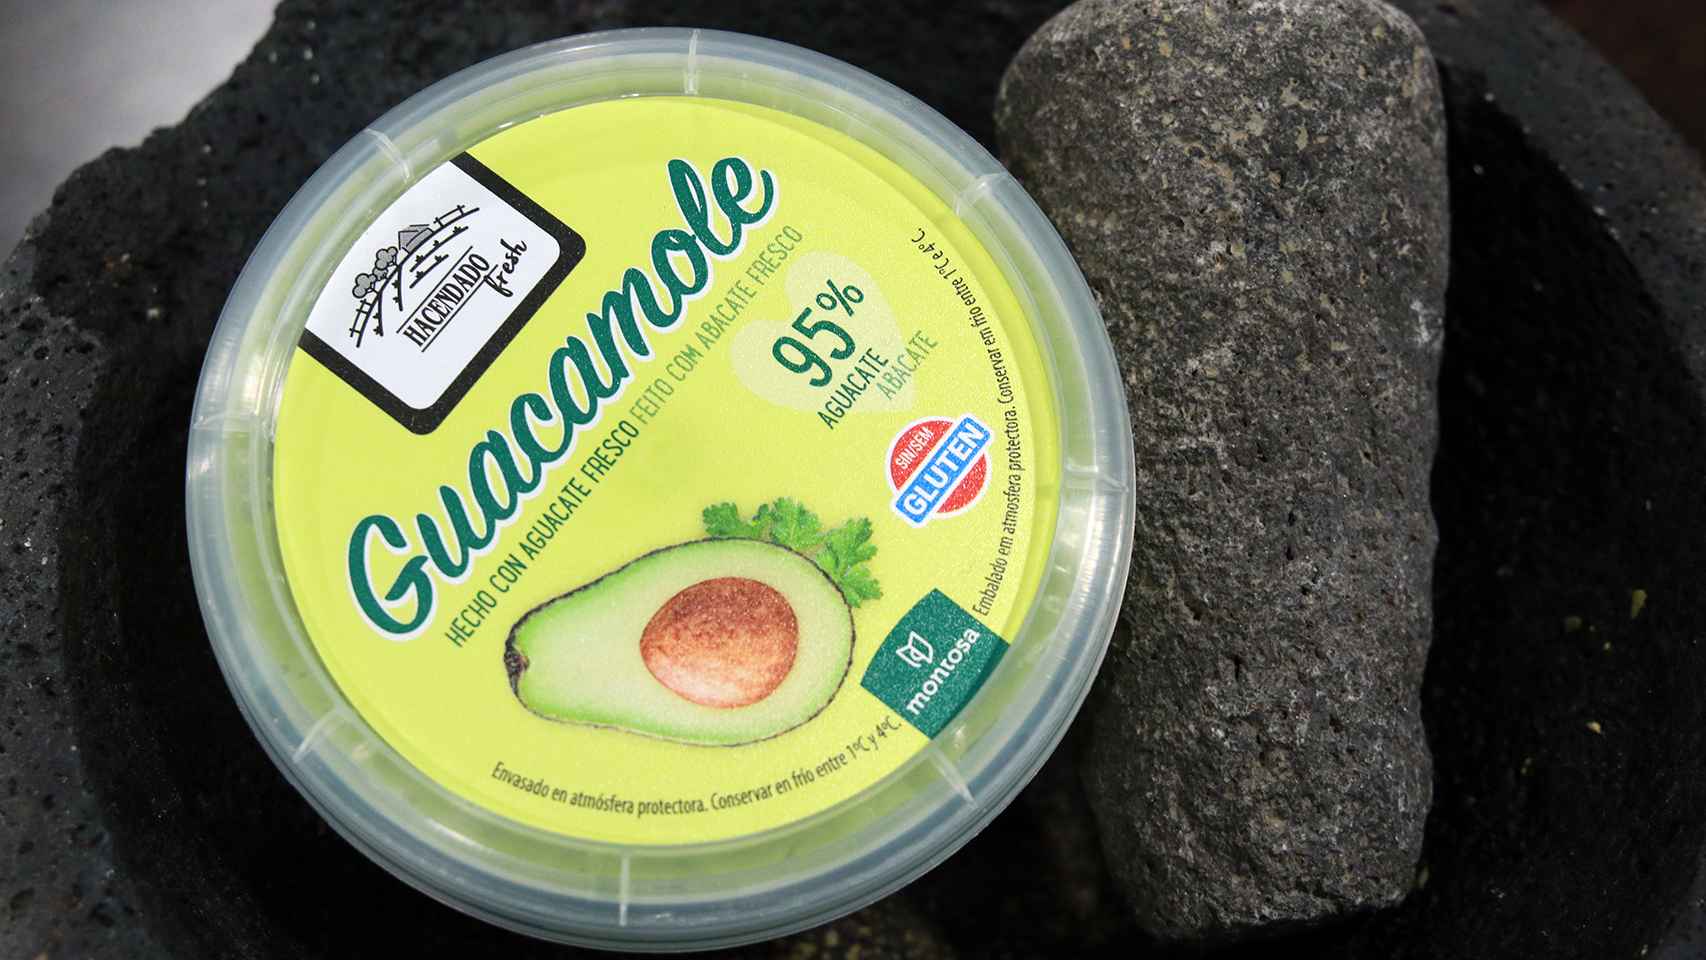 El bote de 200 gramos de guacamole de Hacendado, la marca blanca de Mercadona.